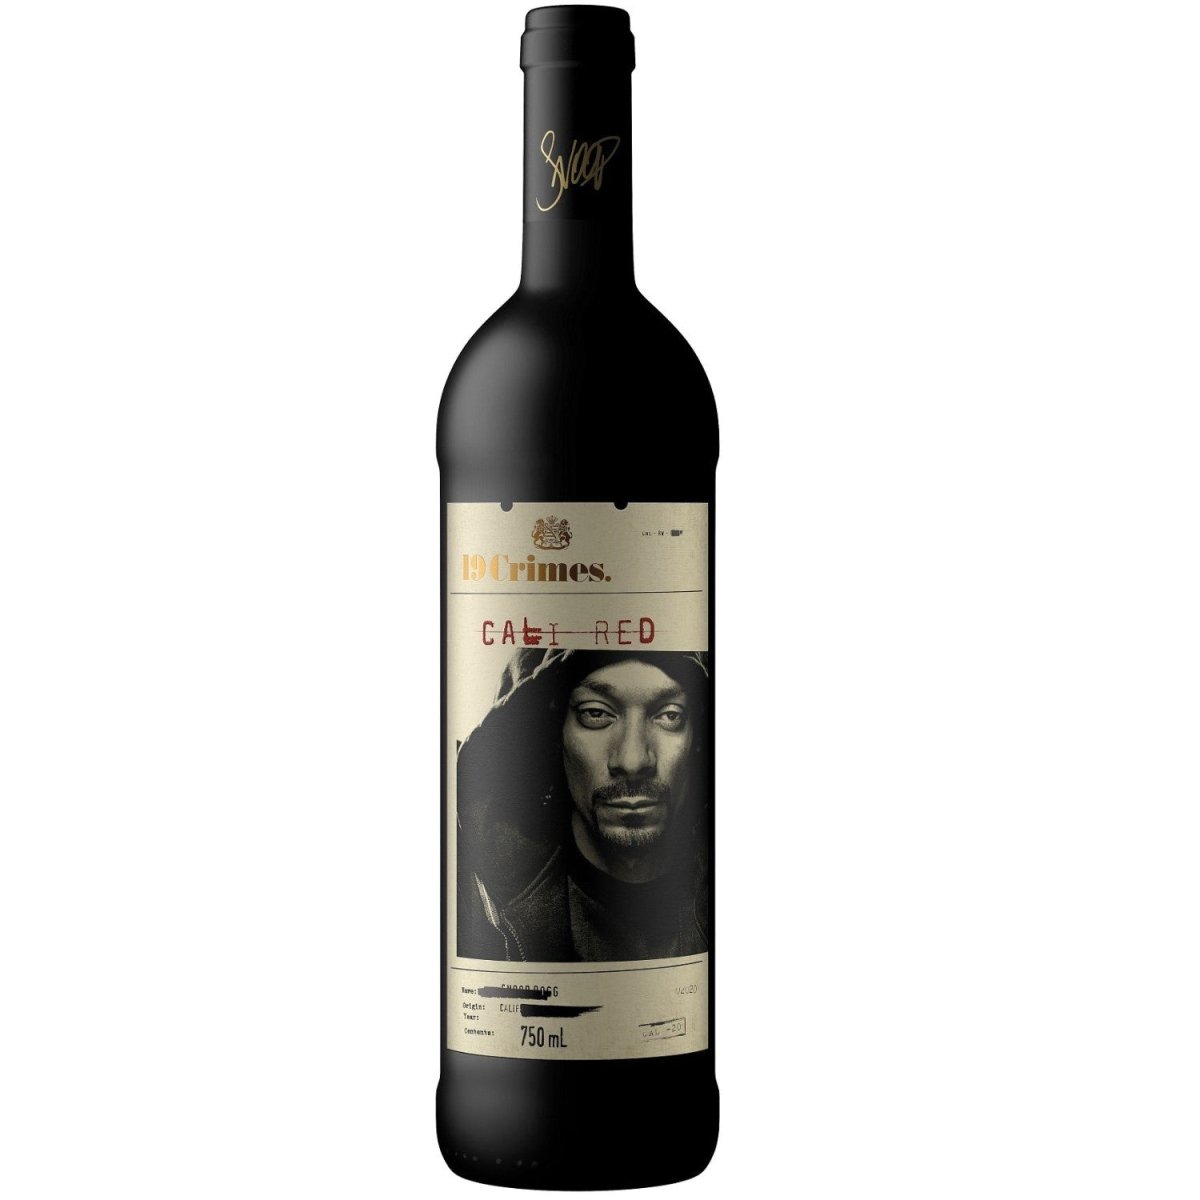 19 Crimes Snoop Dogg Cali Red Penfolds Rotwein Wein Halbtrocken Kalifornien (12 x 0.75l) - Versanel - Wein